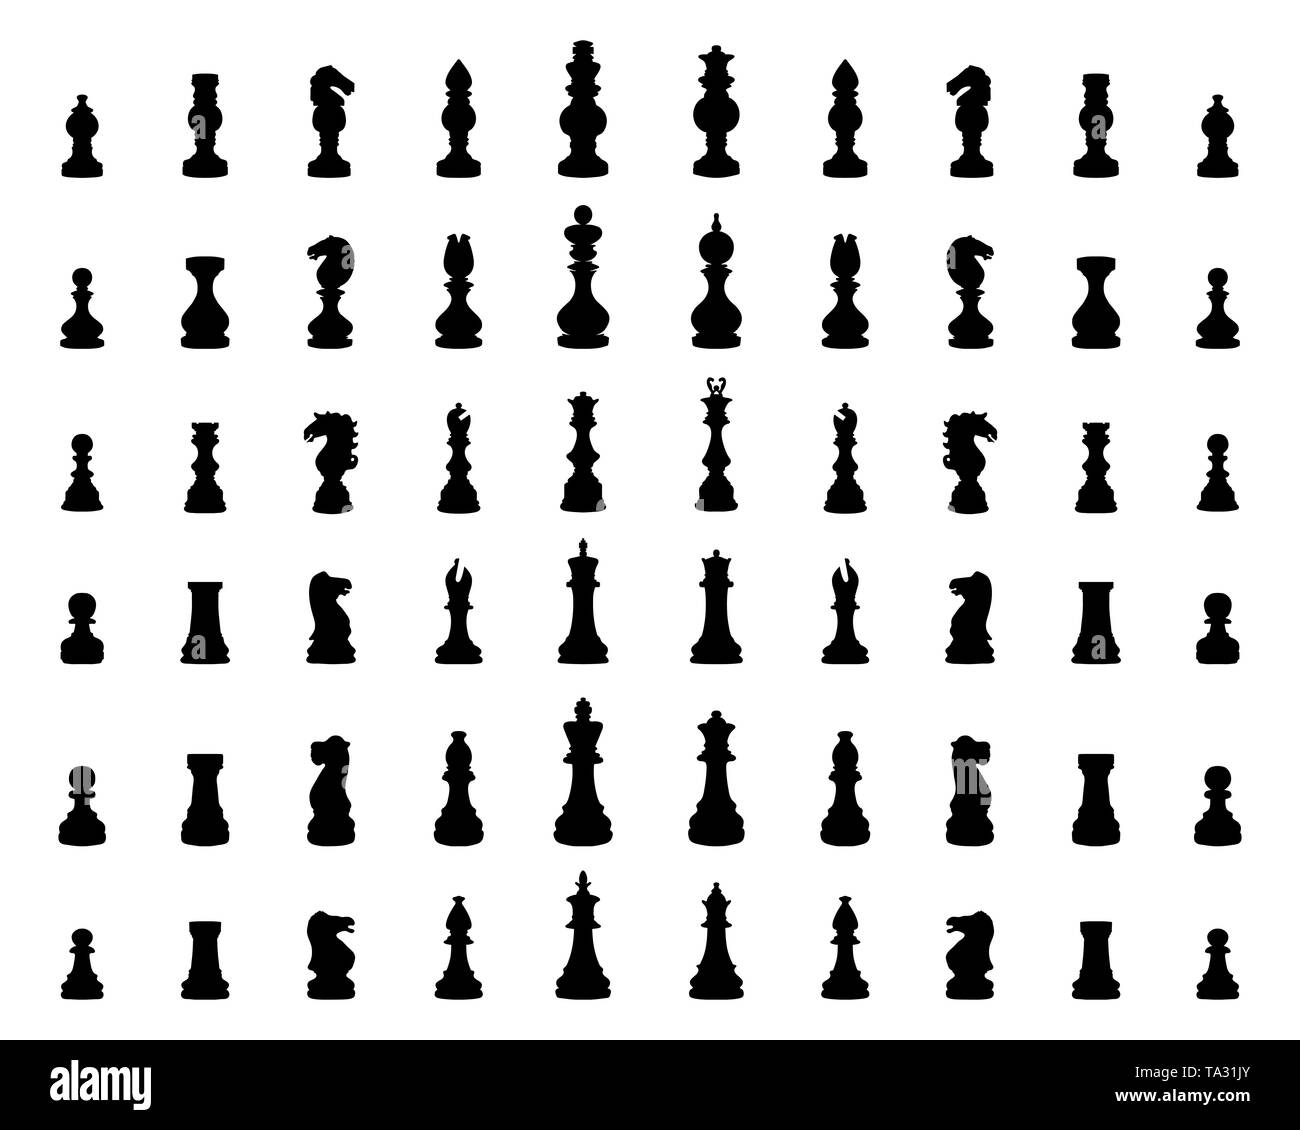 Illustration des pièces d'échecs, silhouettes noires Banque D'Images